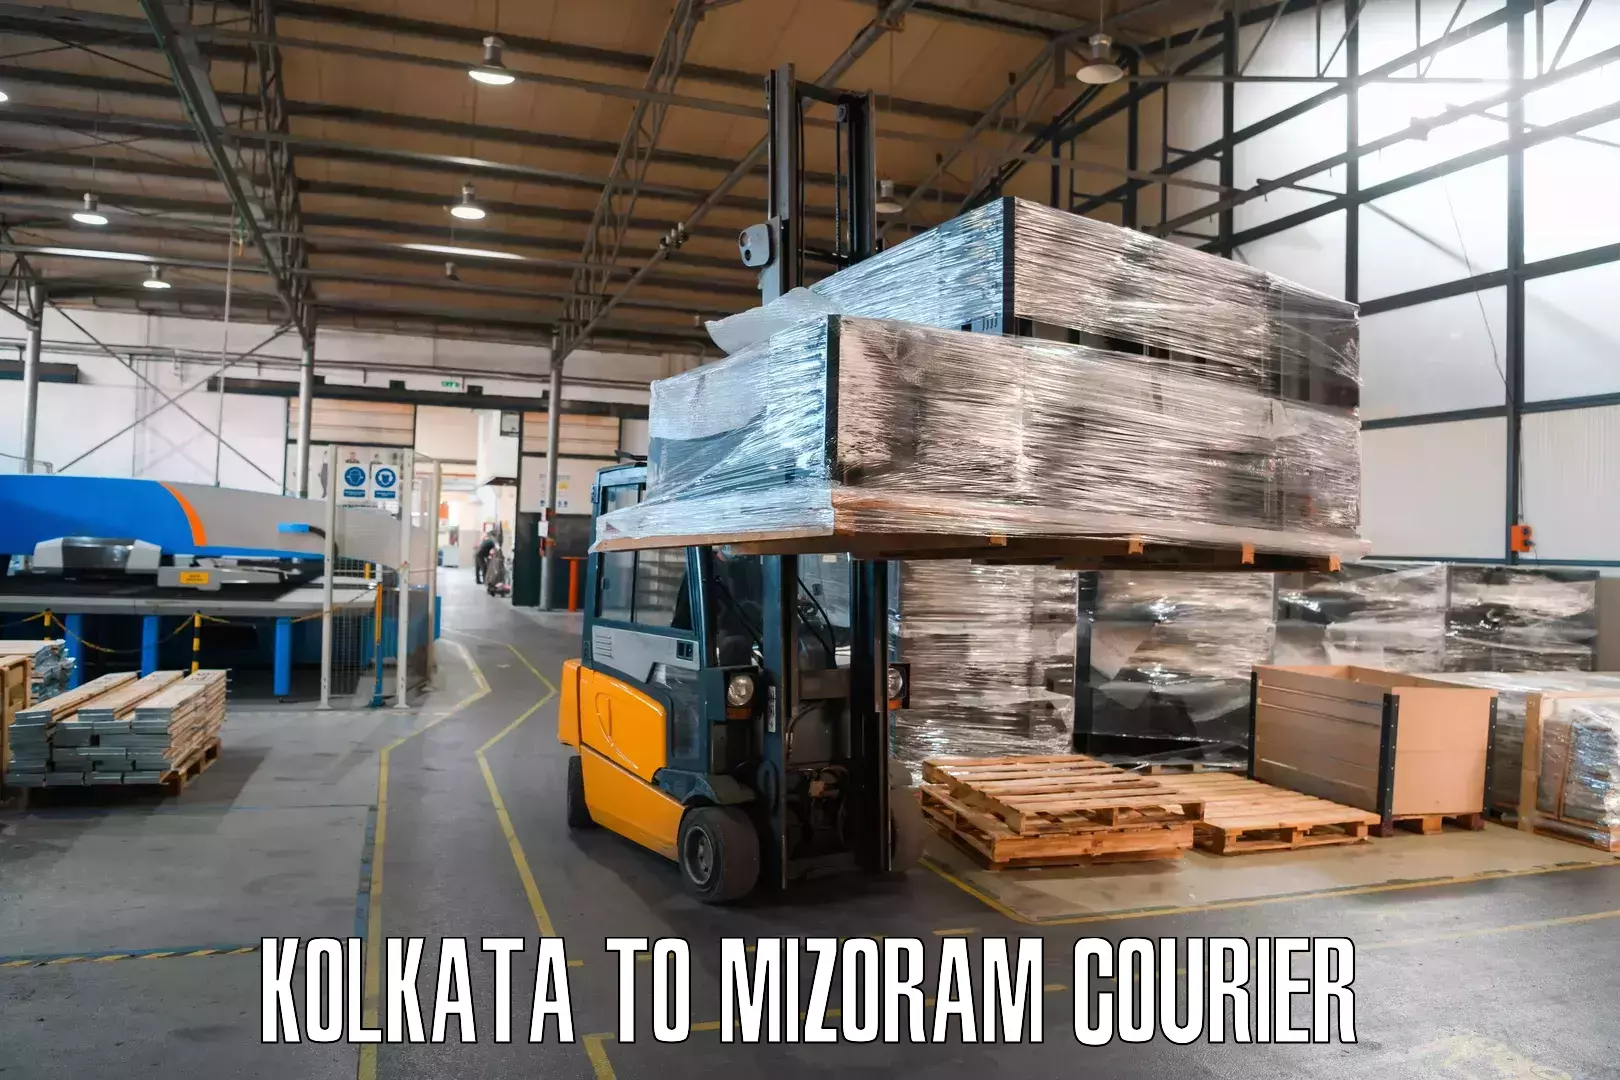 Courier service comparison Kolkata to NIT Aizawl